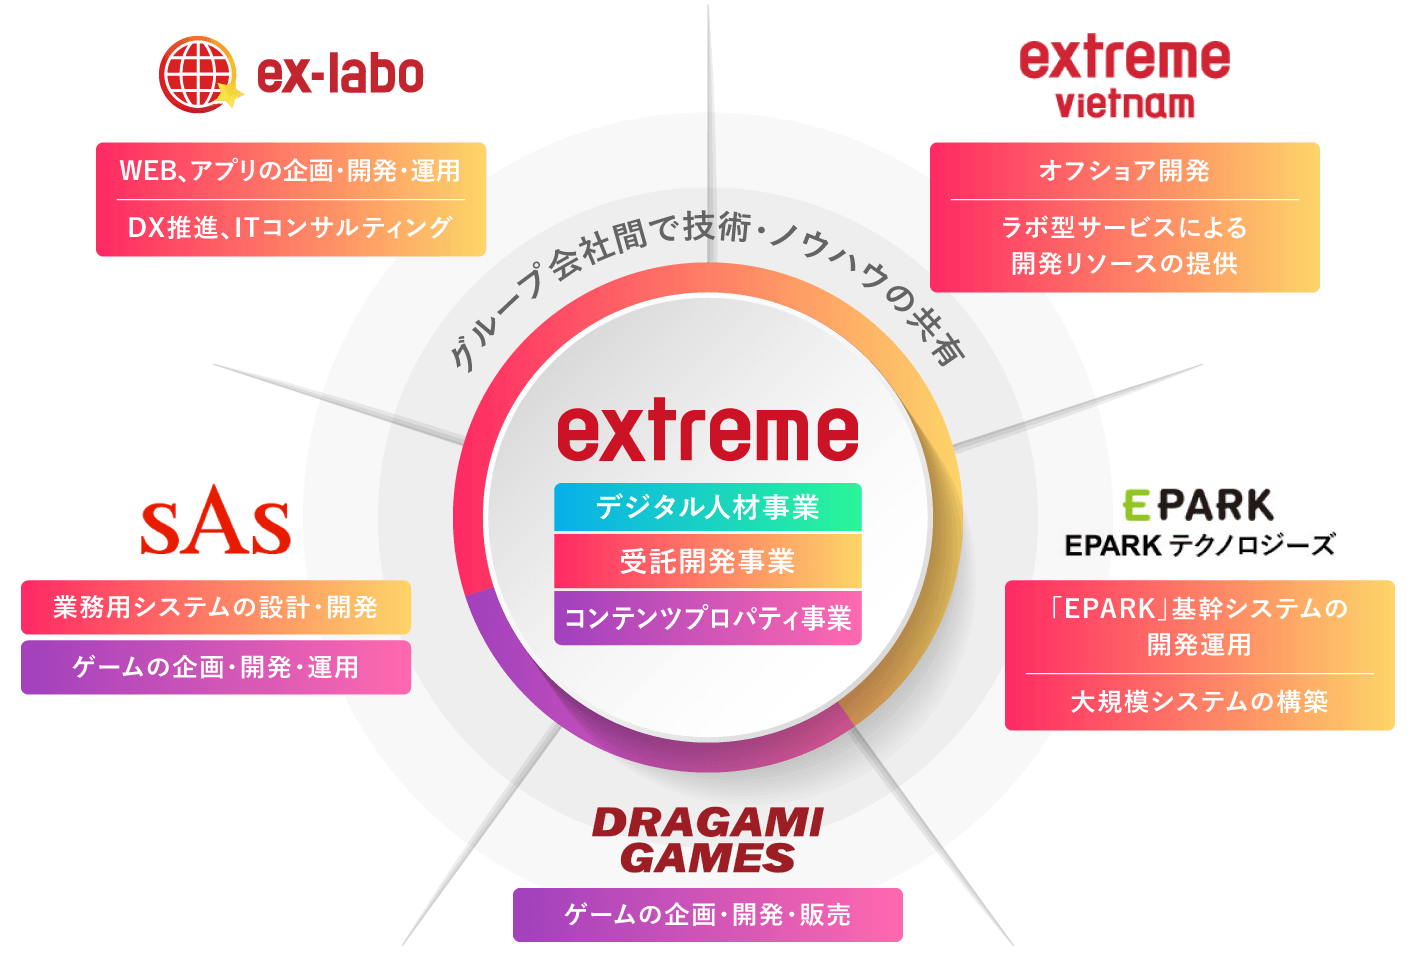 グループ会社間で技術・ノウハウの共有 ex-labo、extreme vietnam、SAS、EPARK、DRAGAMI GAMES